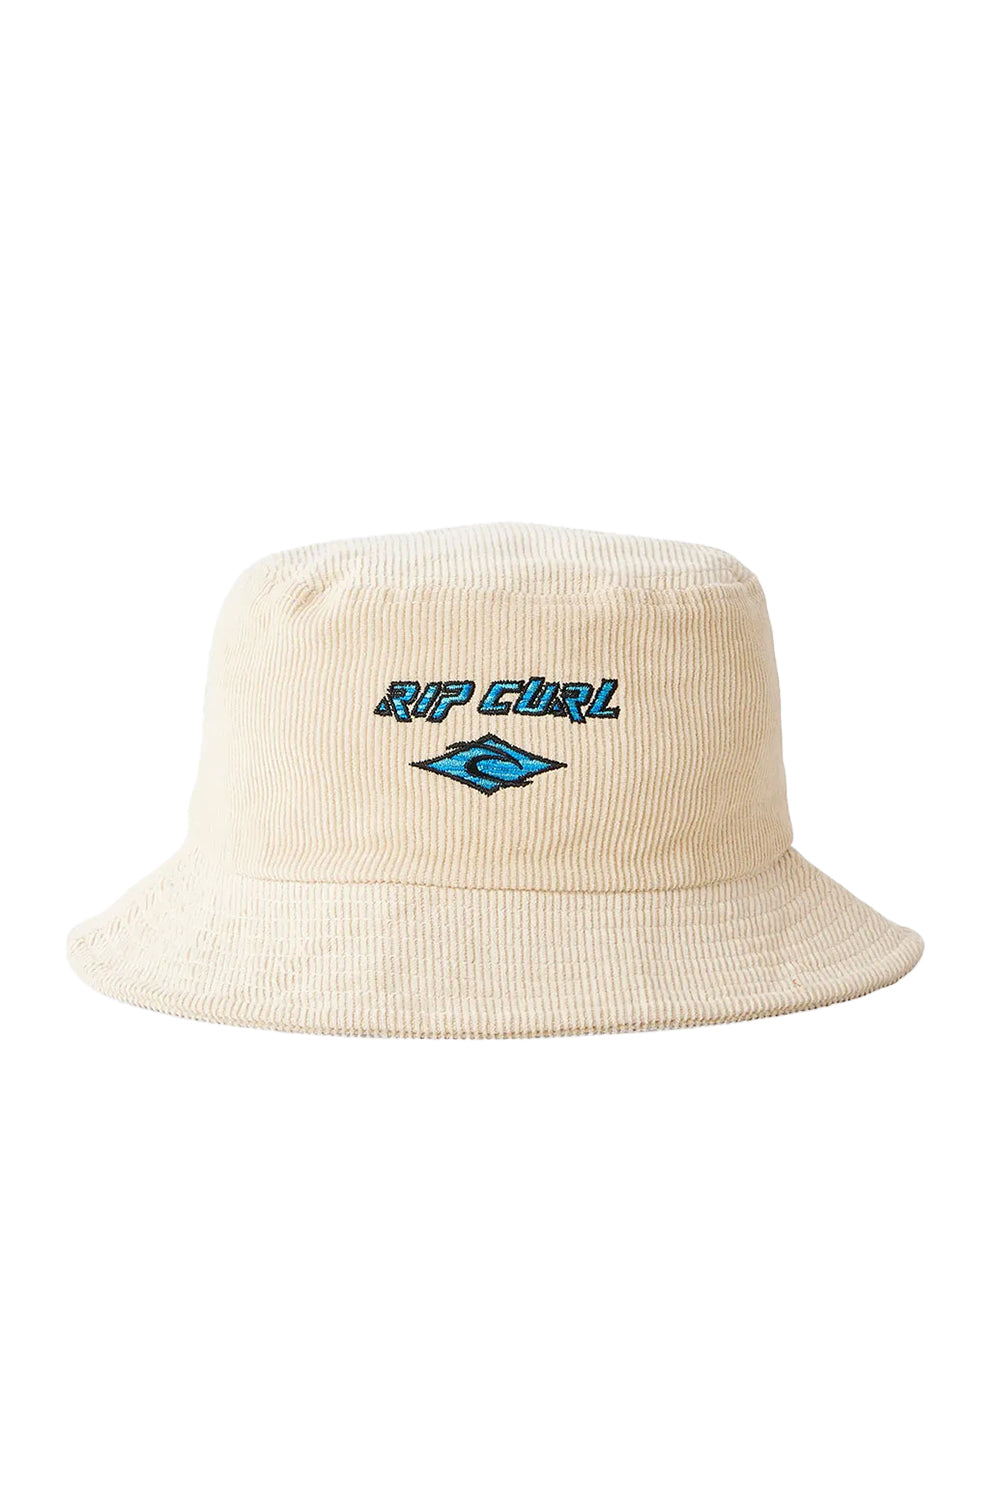 Rip Curl Boys Diamond Cord Bucket Hat